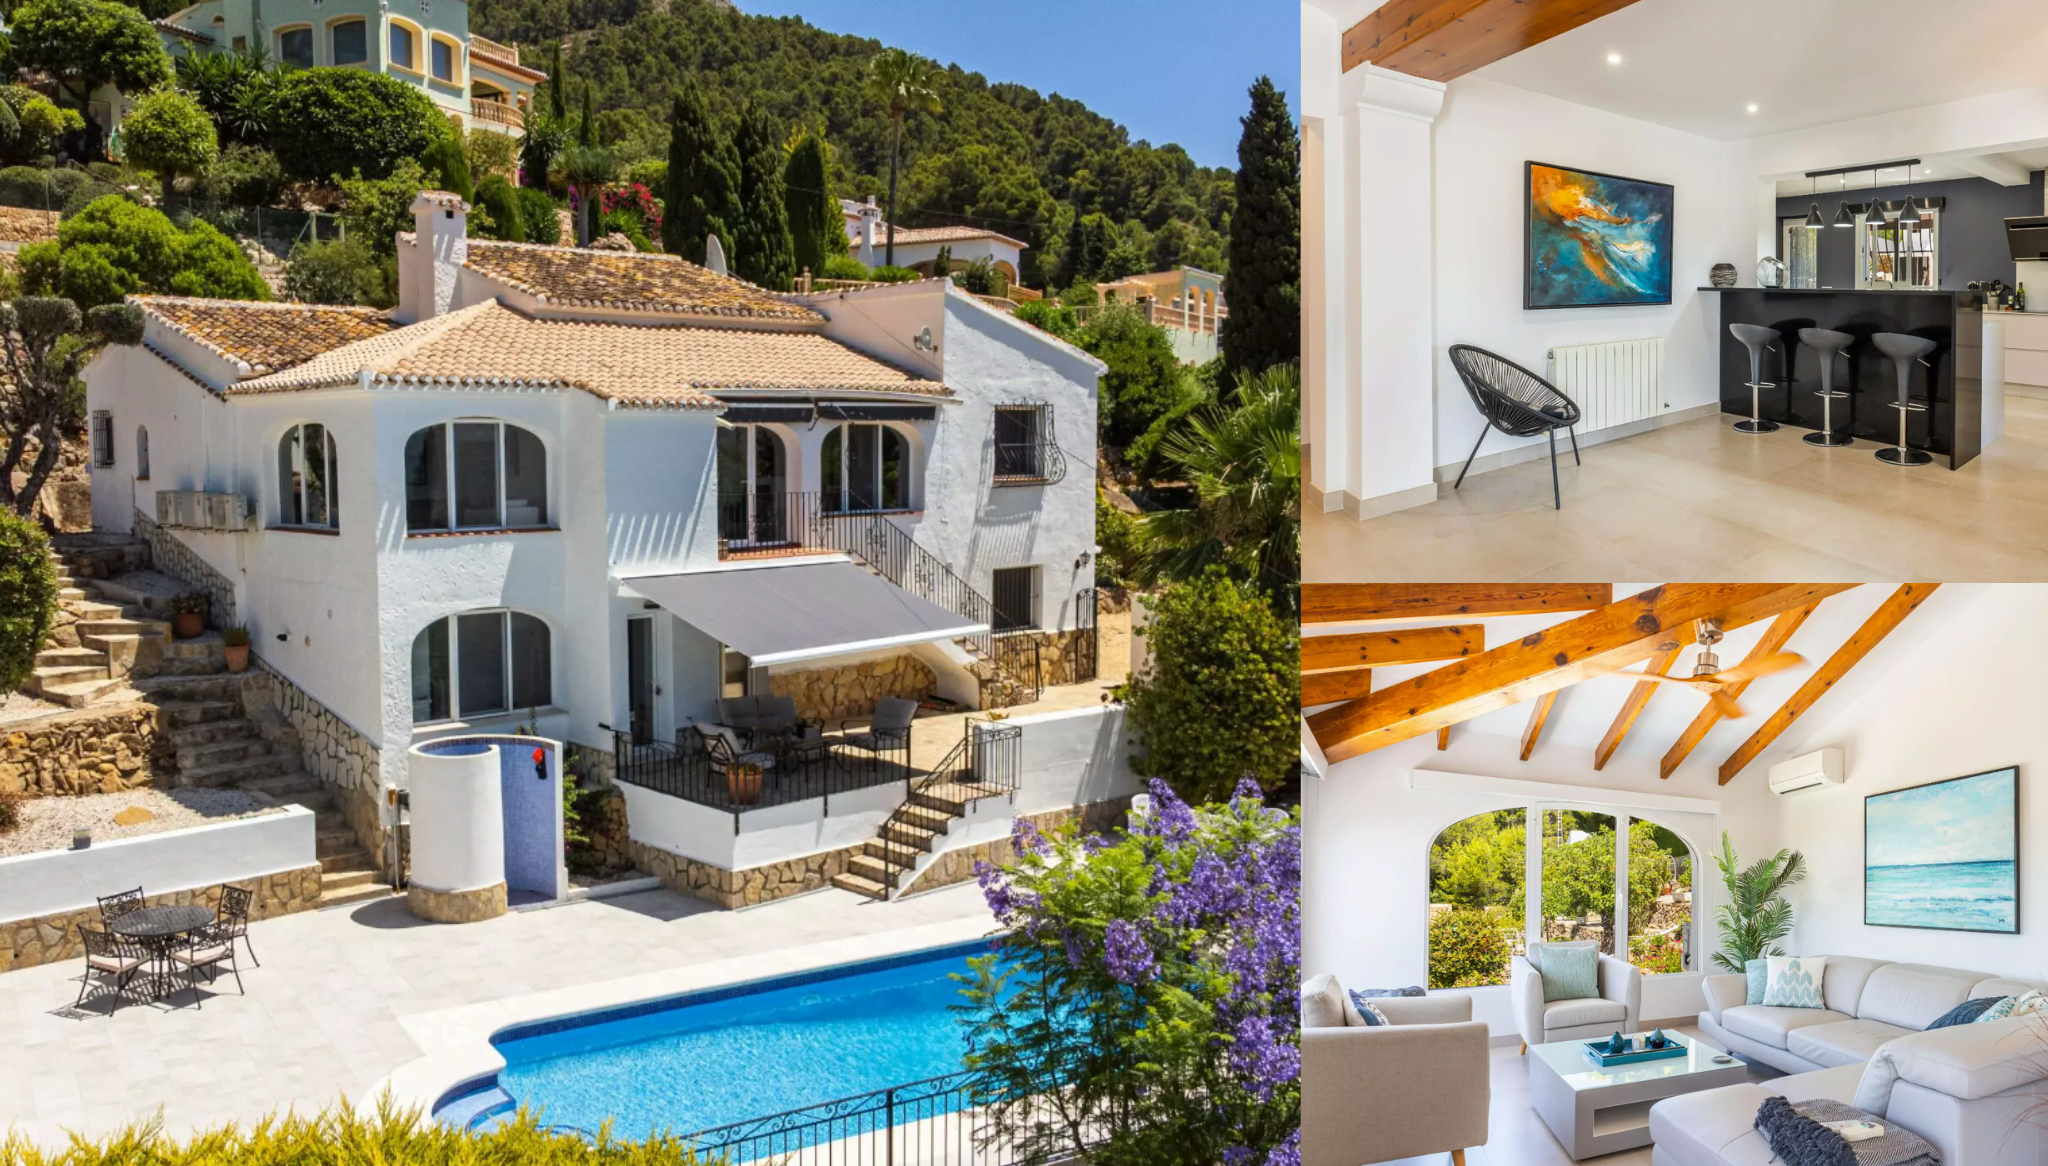 Descubre esta moderna villa en venta en El Montgó